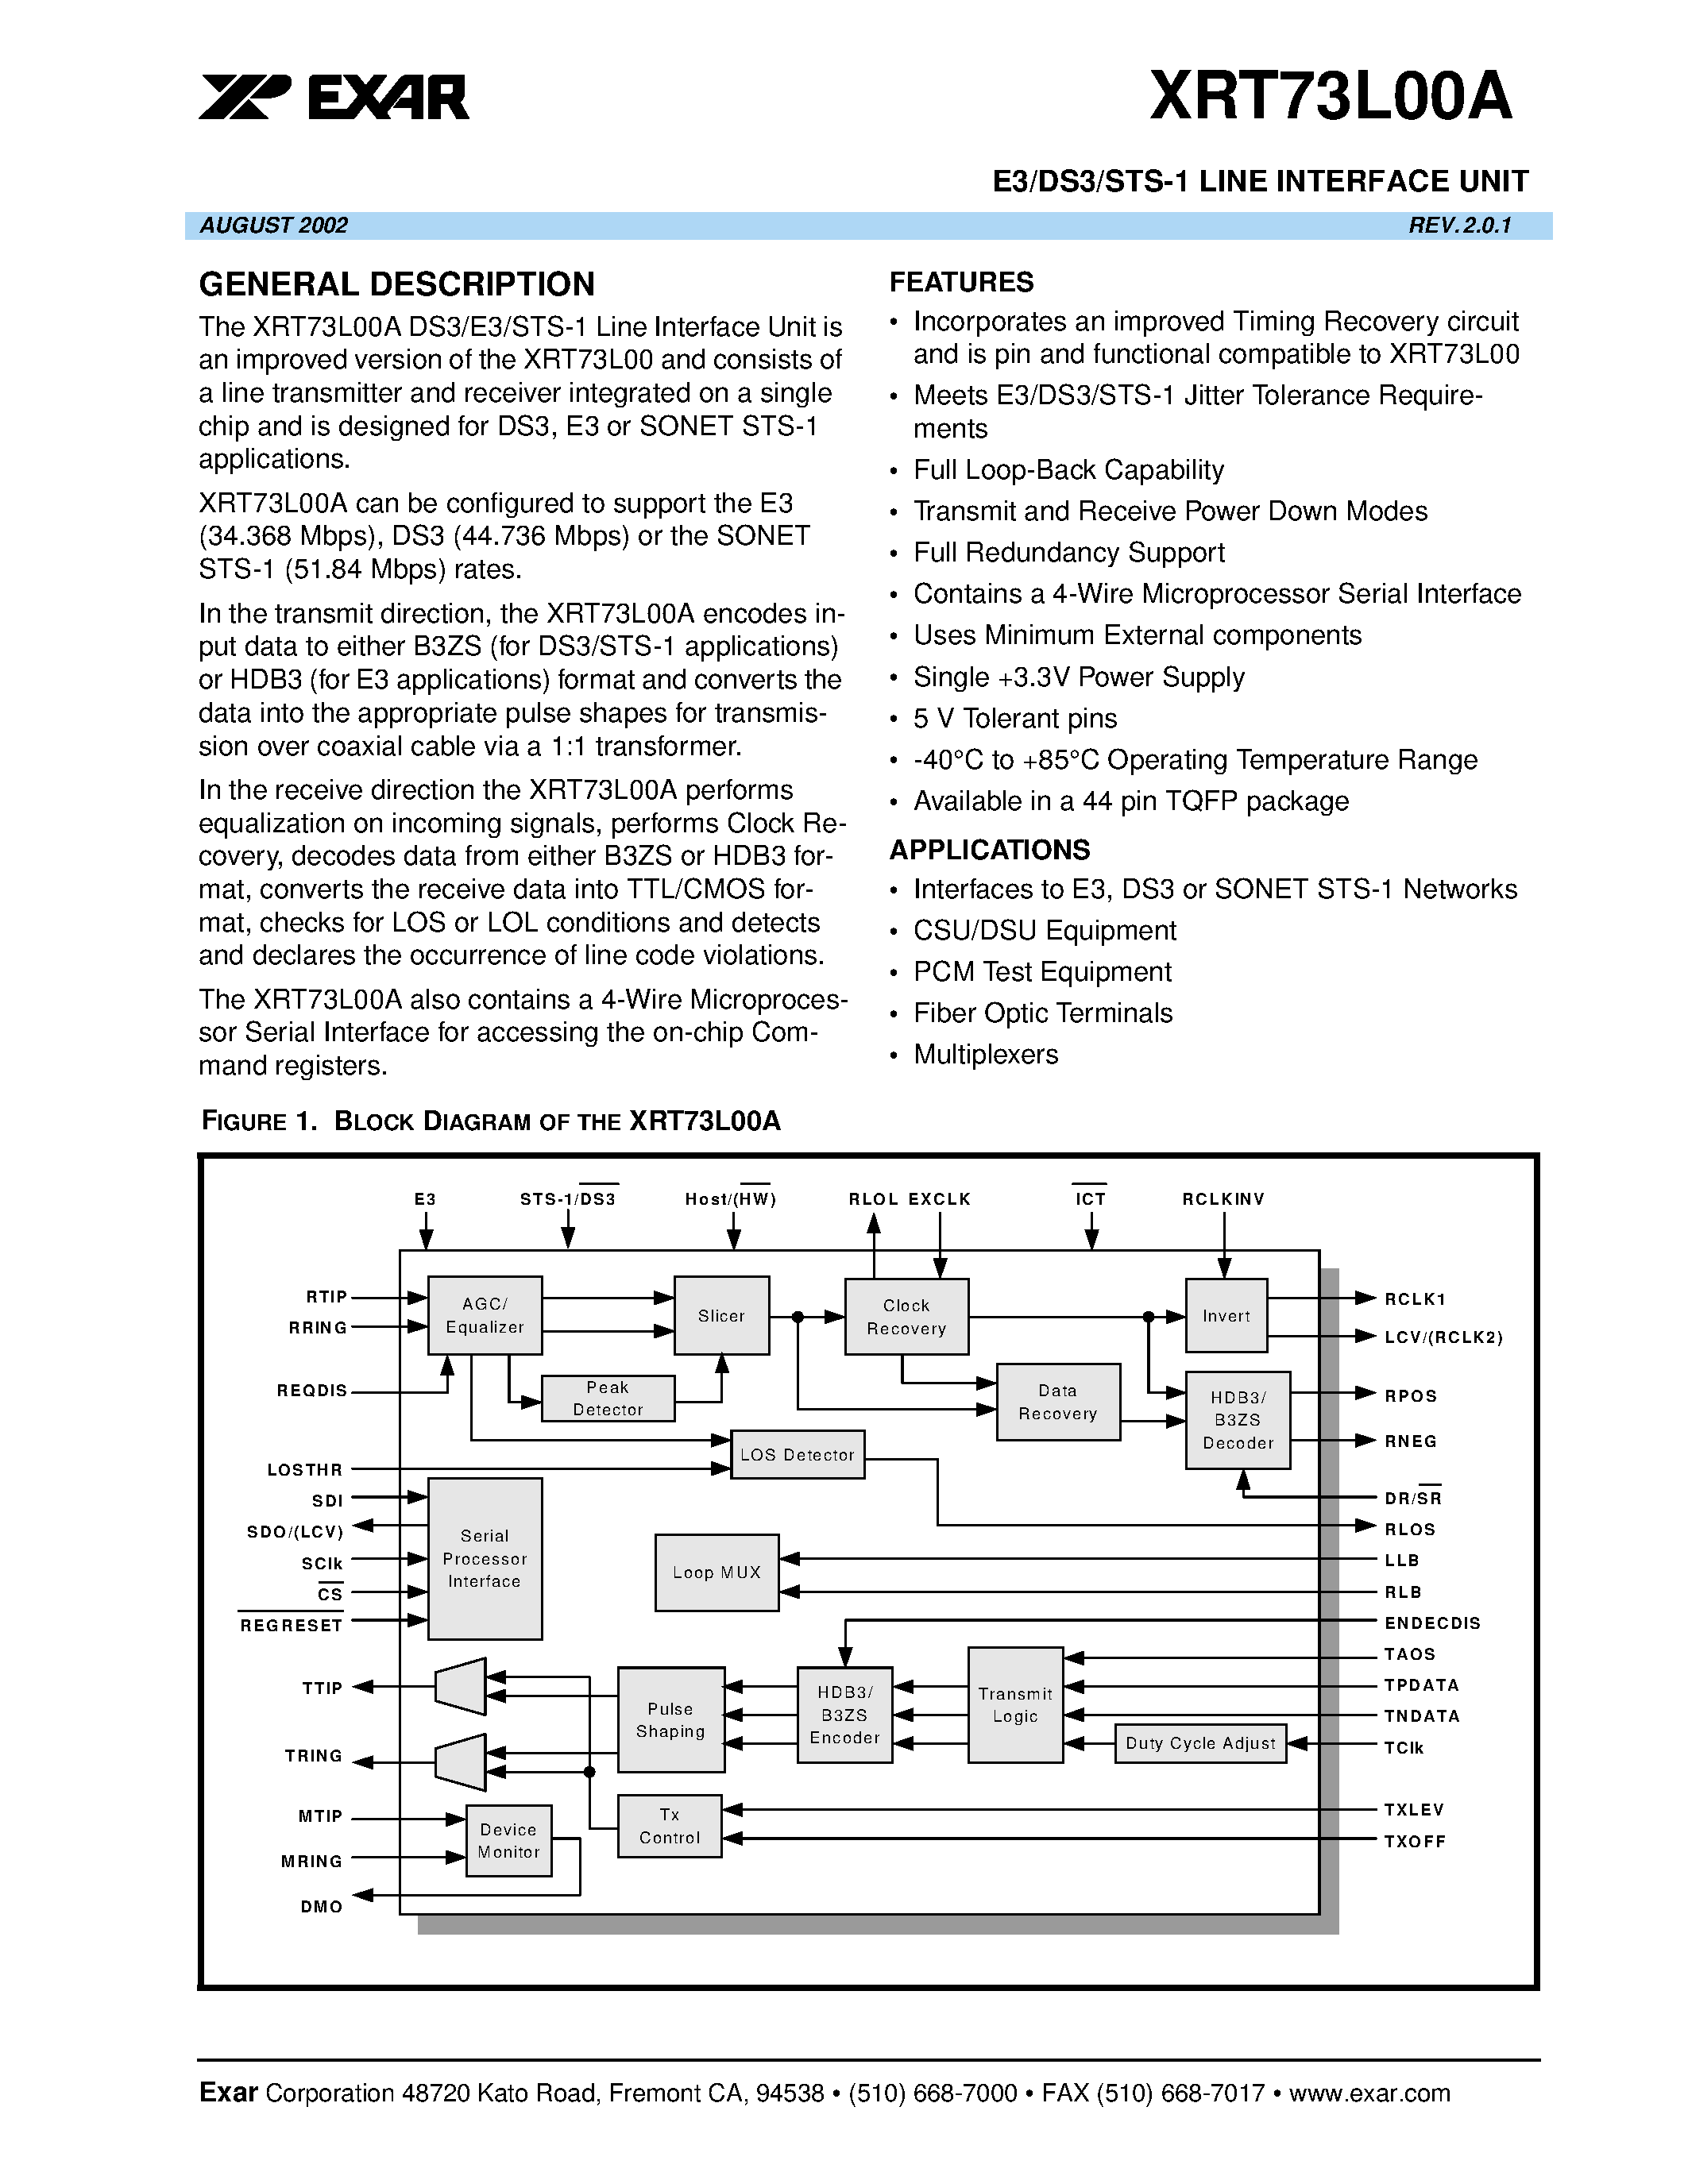 Даташит XRT73L00 - E3/DS3/STS-1 LINE INTERFACE UNIT страница 1